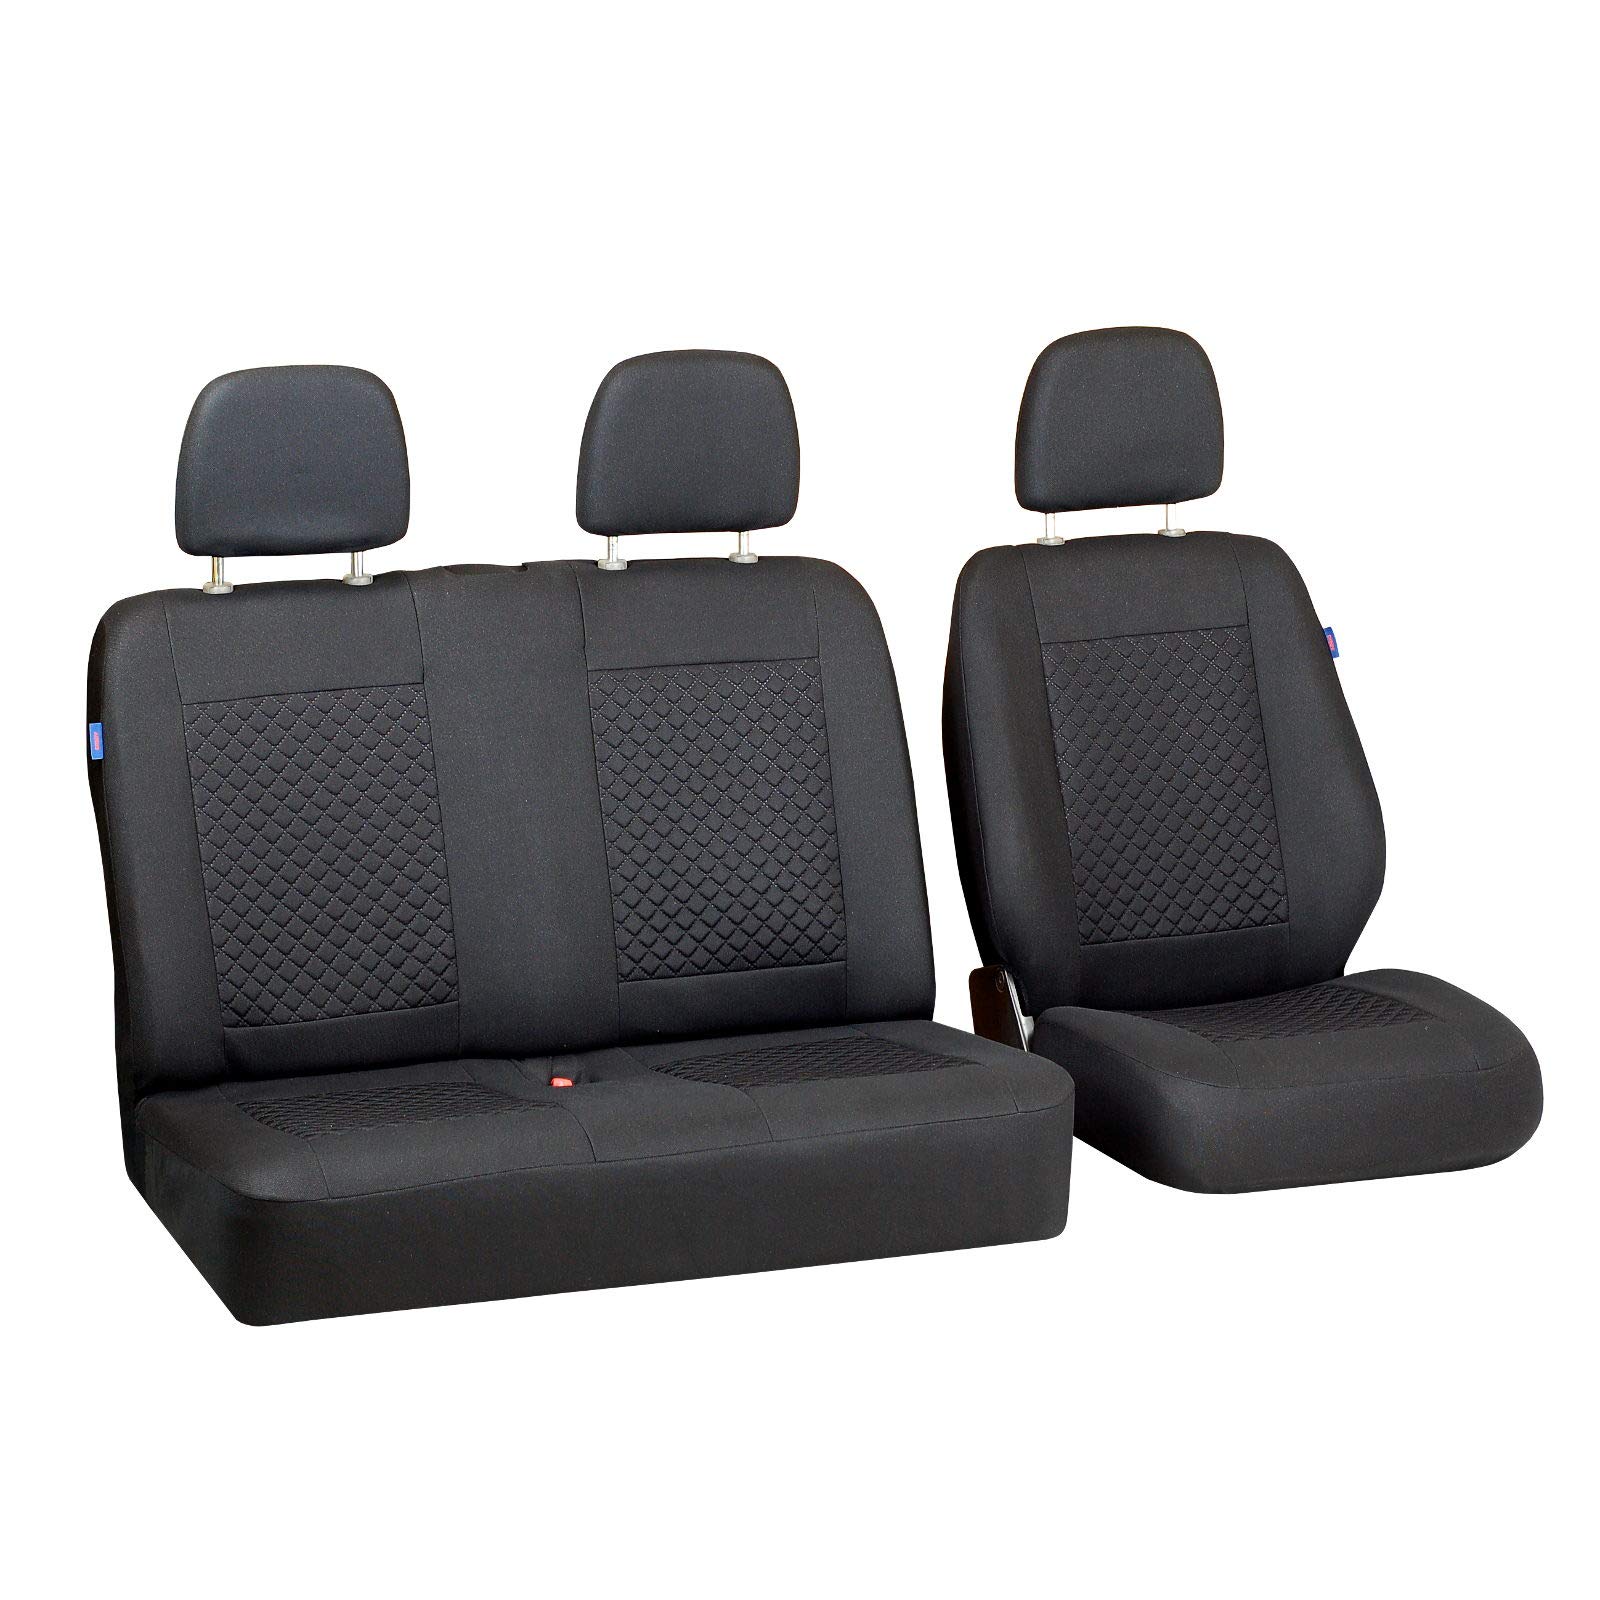 Zakschneider MAXITY Autositzbezug Set 1+2 - Farbe Premium Schwarz gepresstes Karomuster von Zakschneider